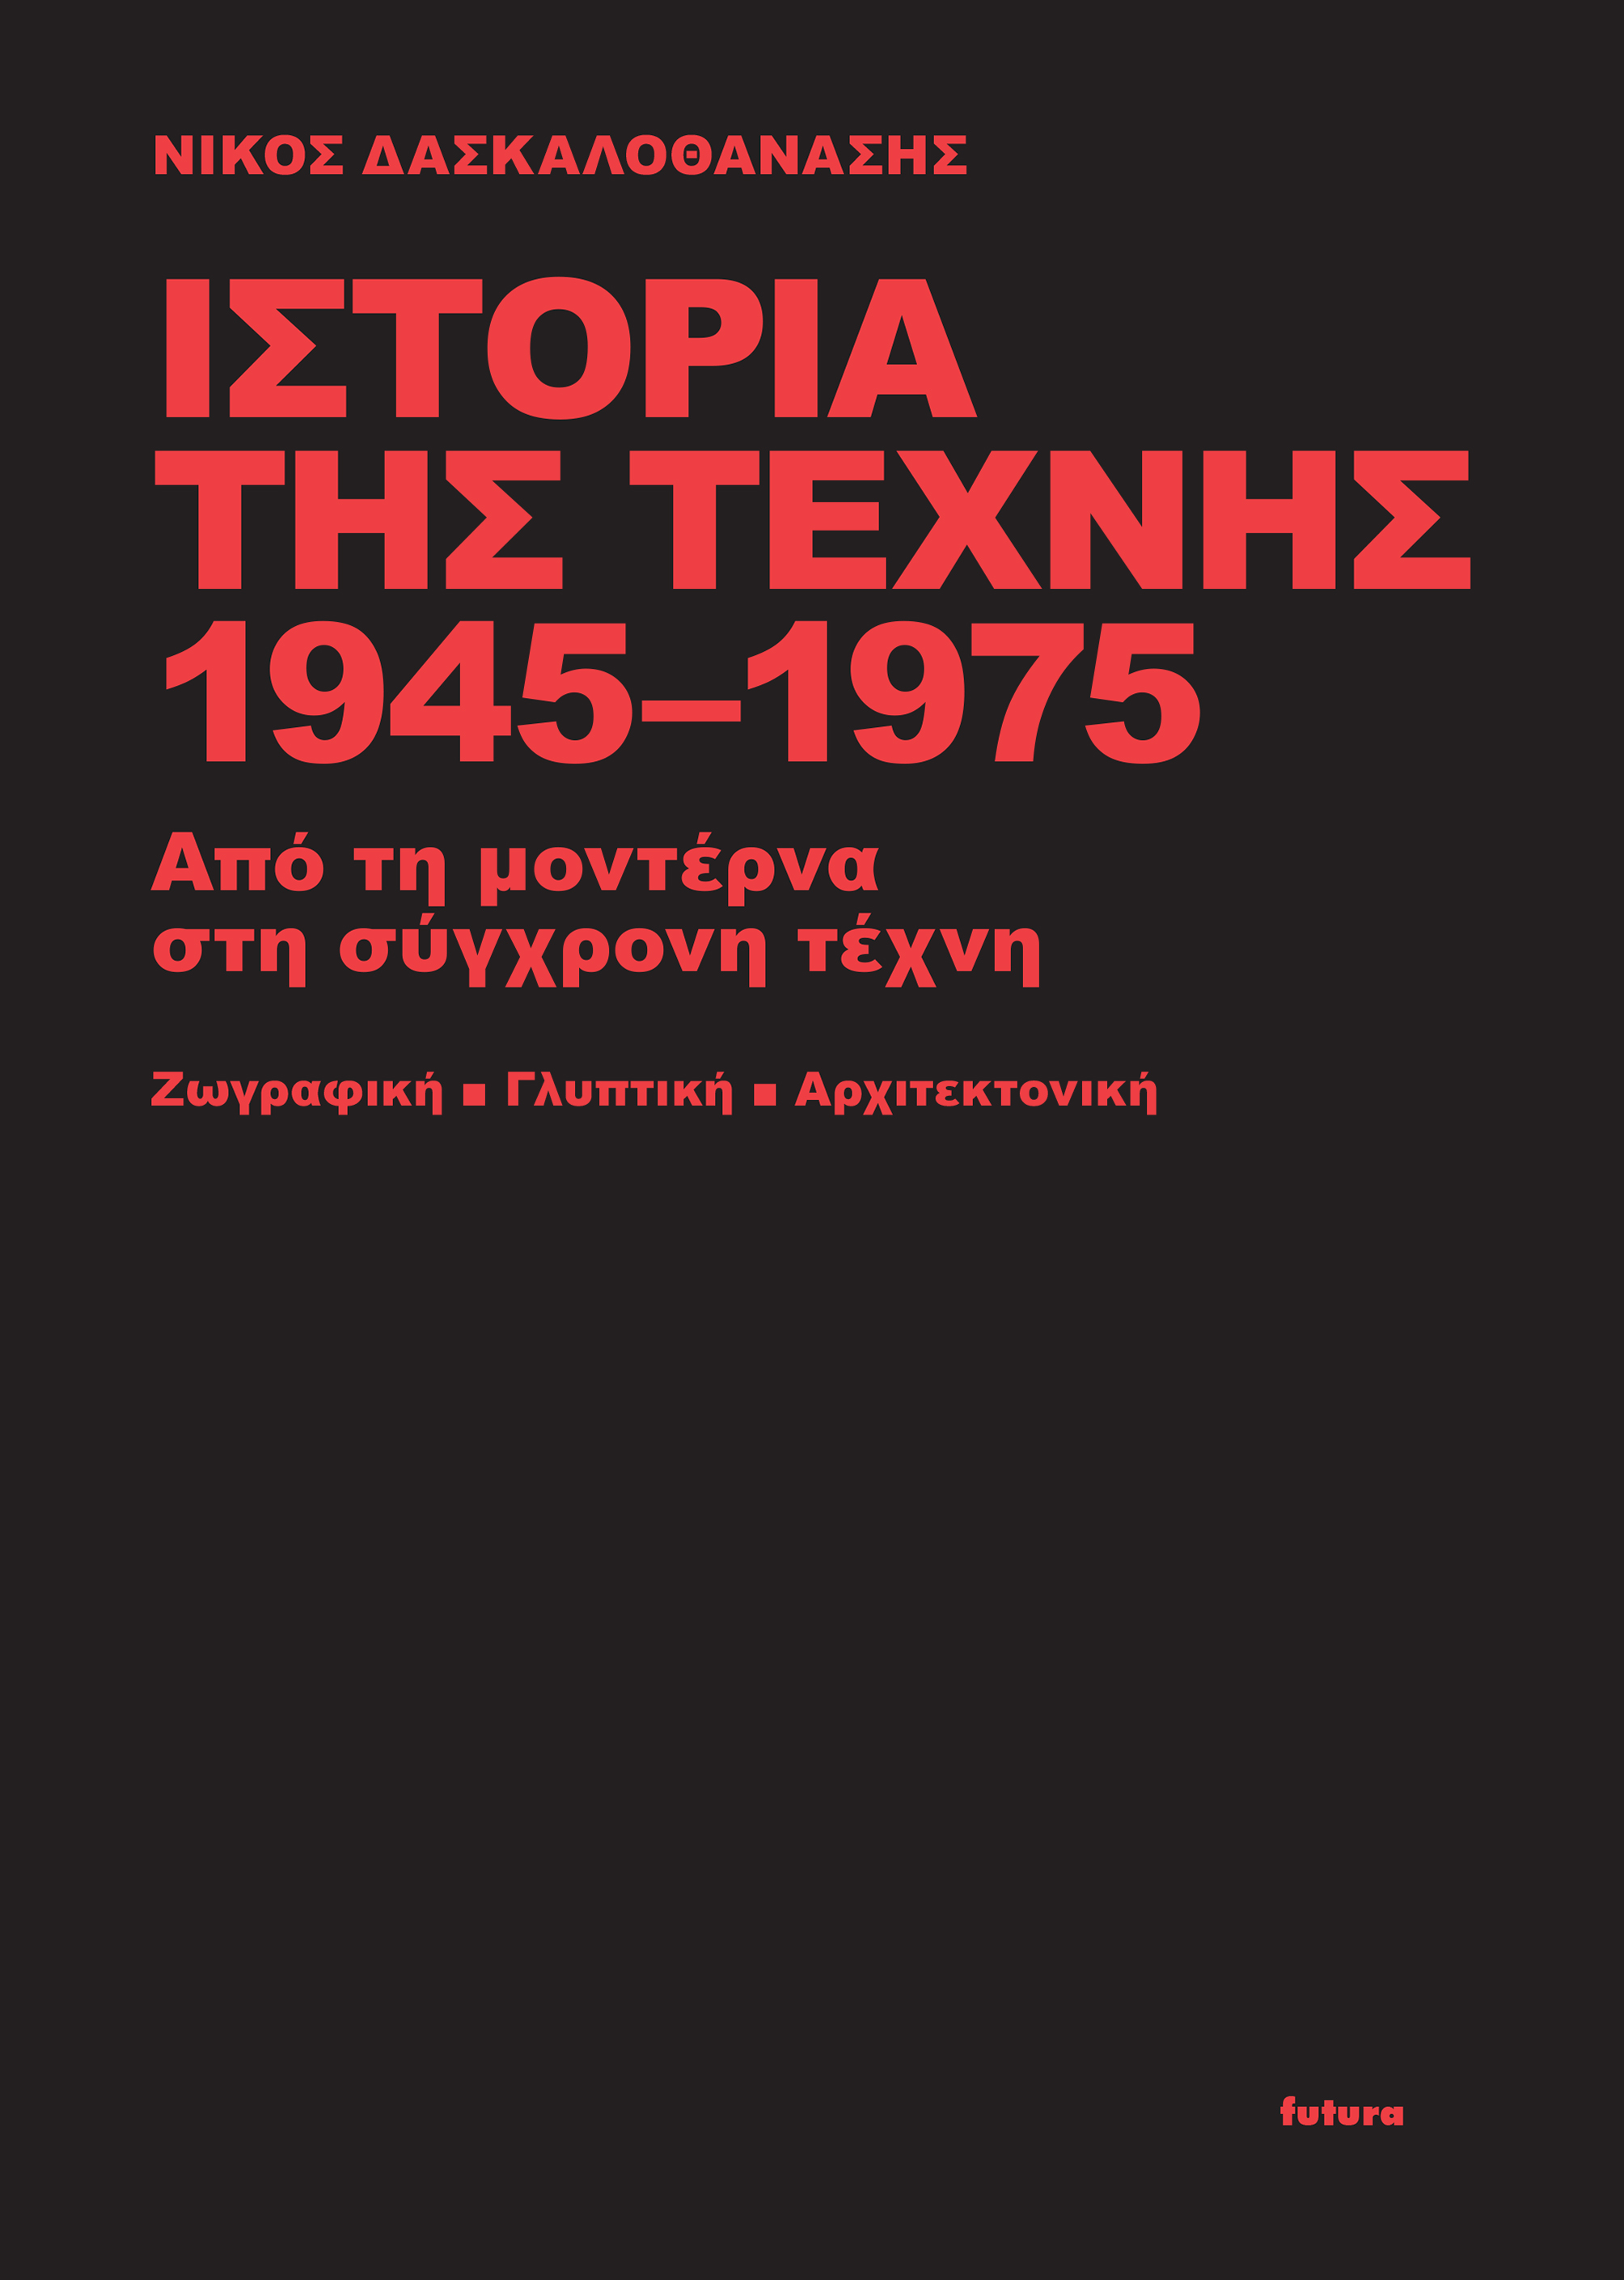 Ιστορία της τέχνης 1945-1975 , Από τη μοντέρνα στη σύγχρονη τέχνη: Ζωγραφική, γλυπτική, αρχιτεκτονική, Δασκαλοθανάσης, Νίκος, Futura, 2022